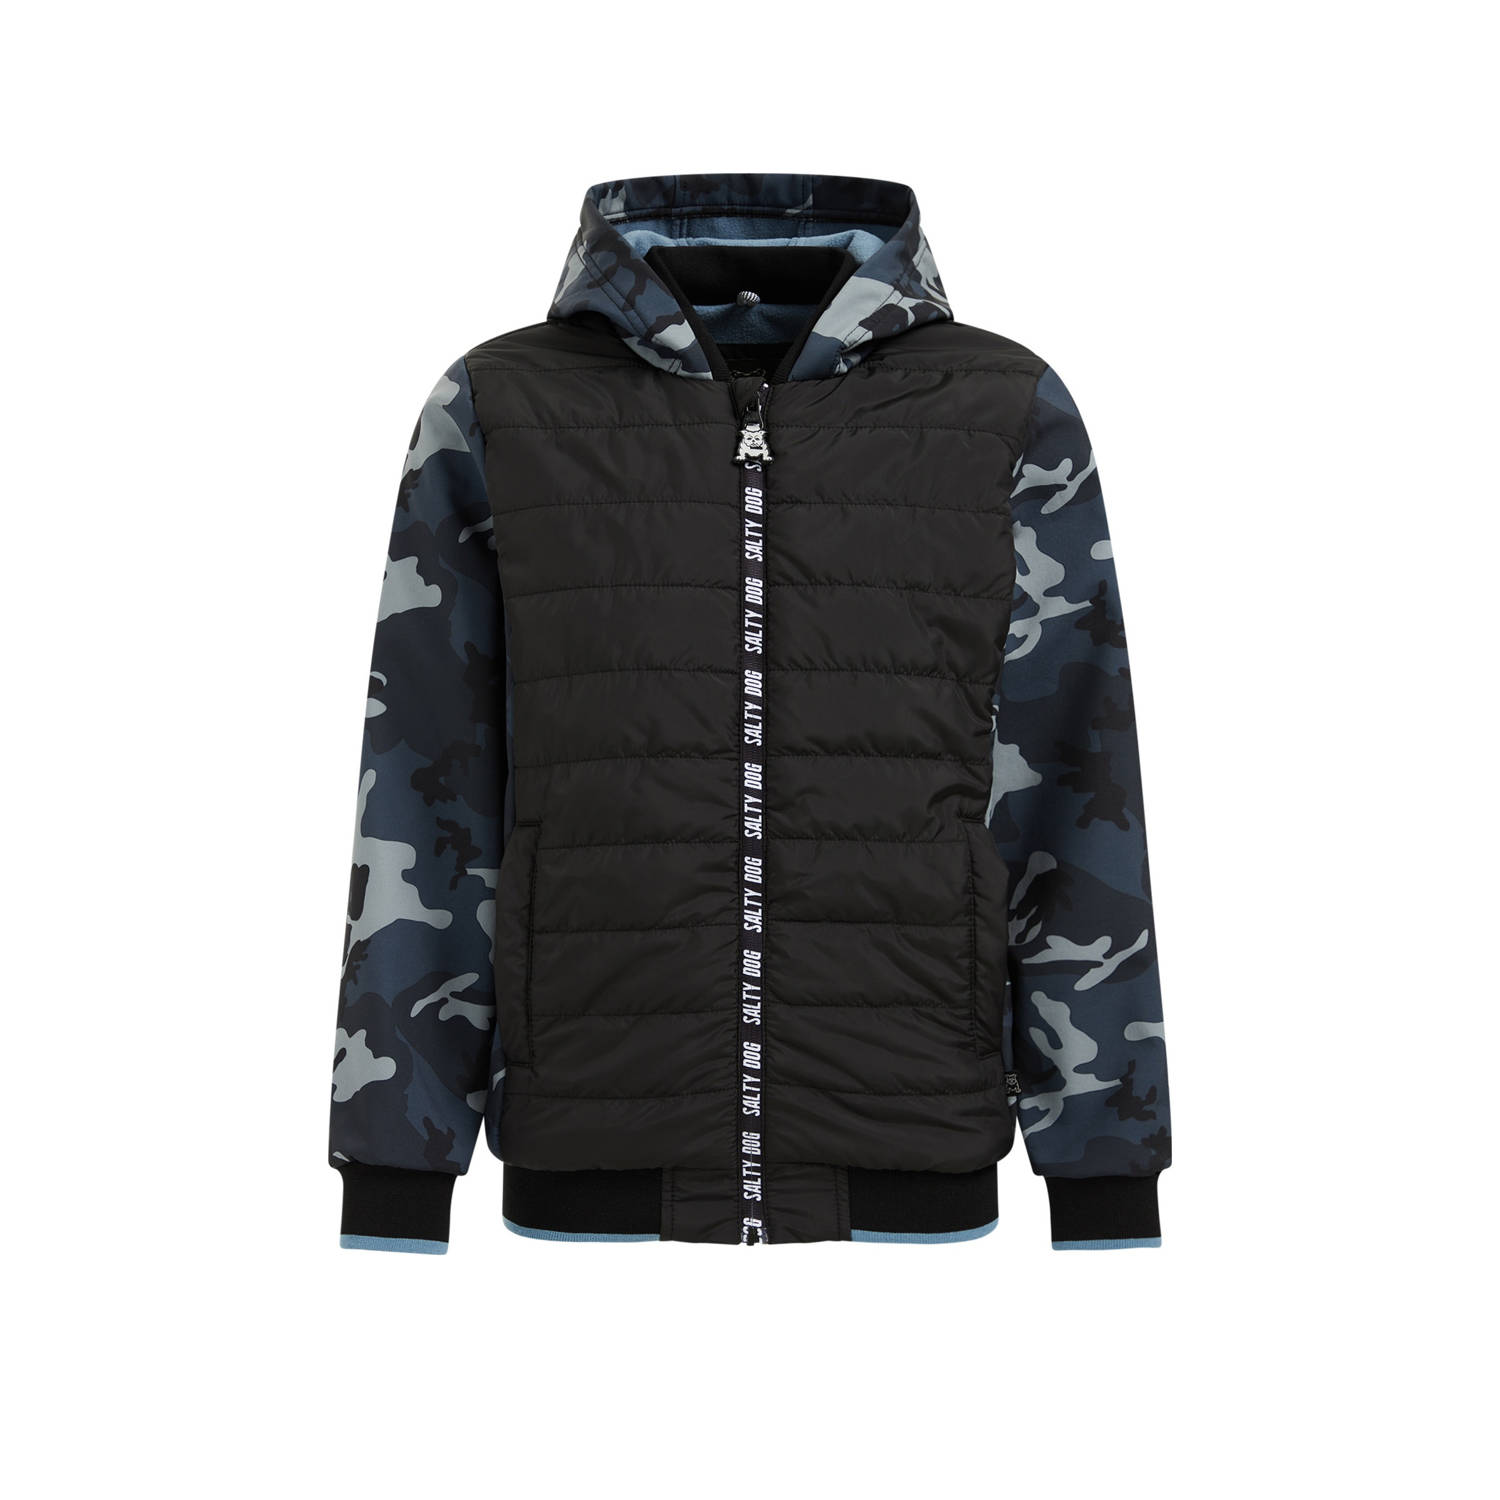 WE Fashion softshell jas met camouflageprint zwart grijs blauw